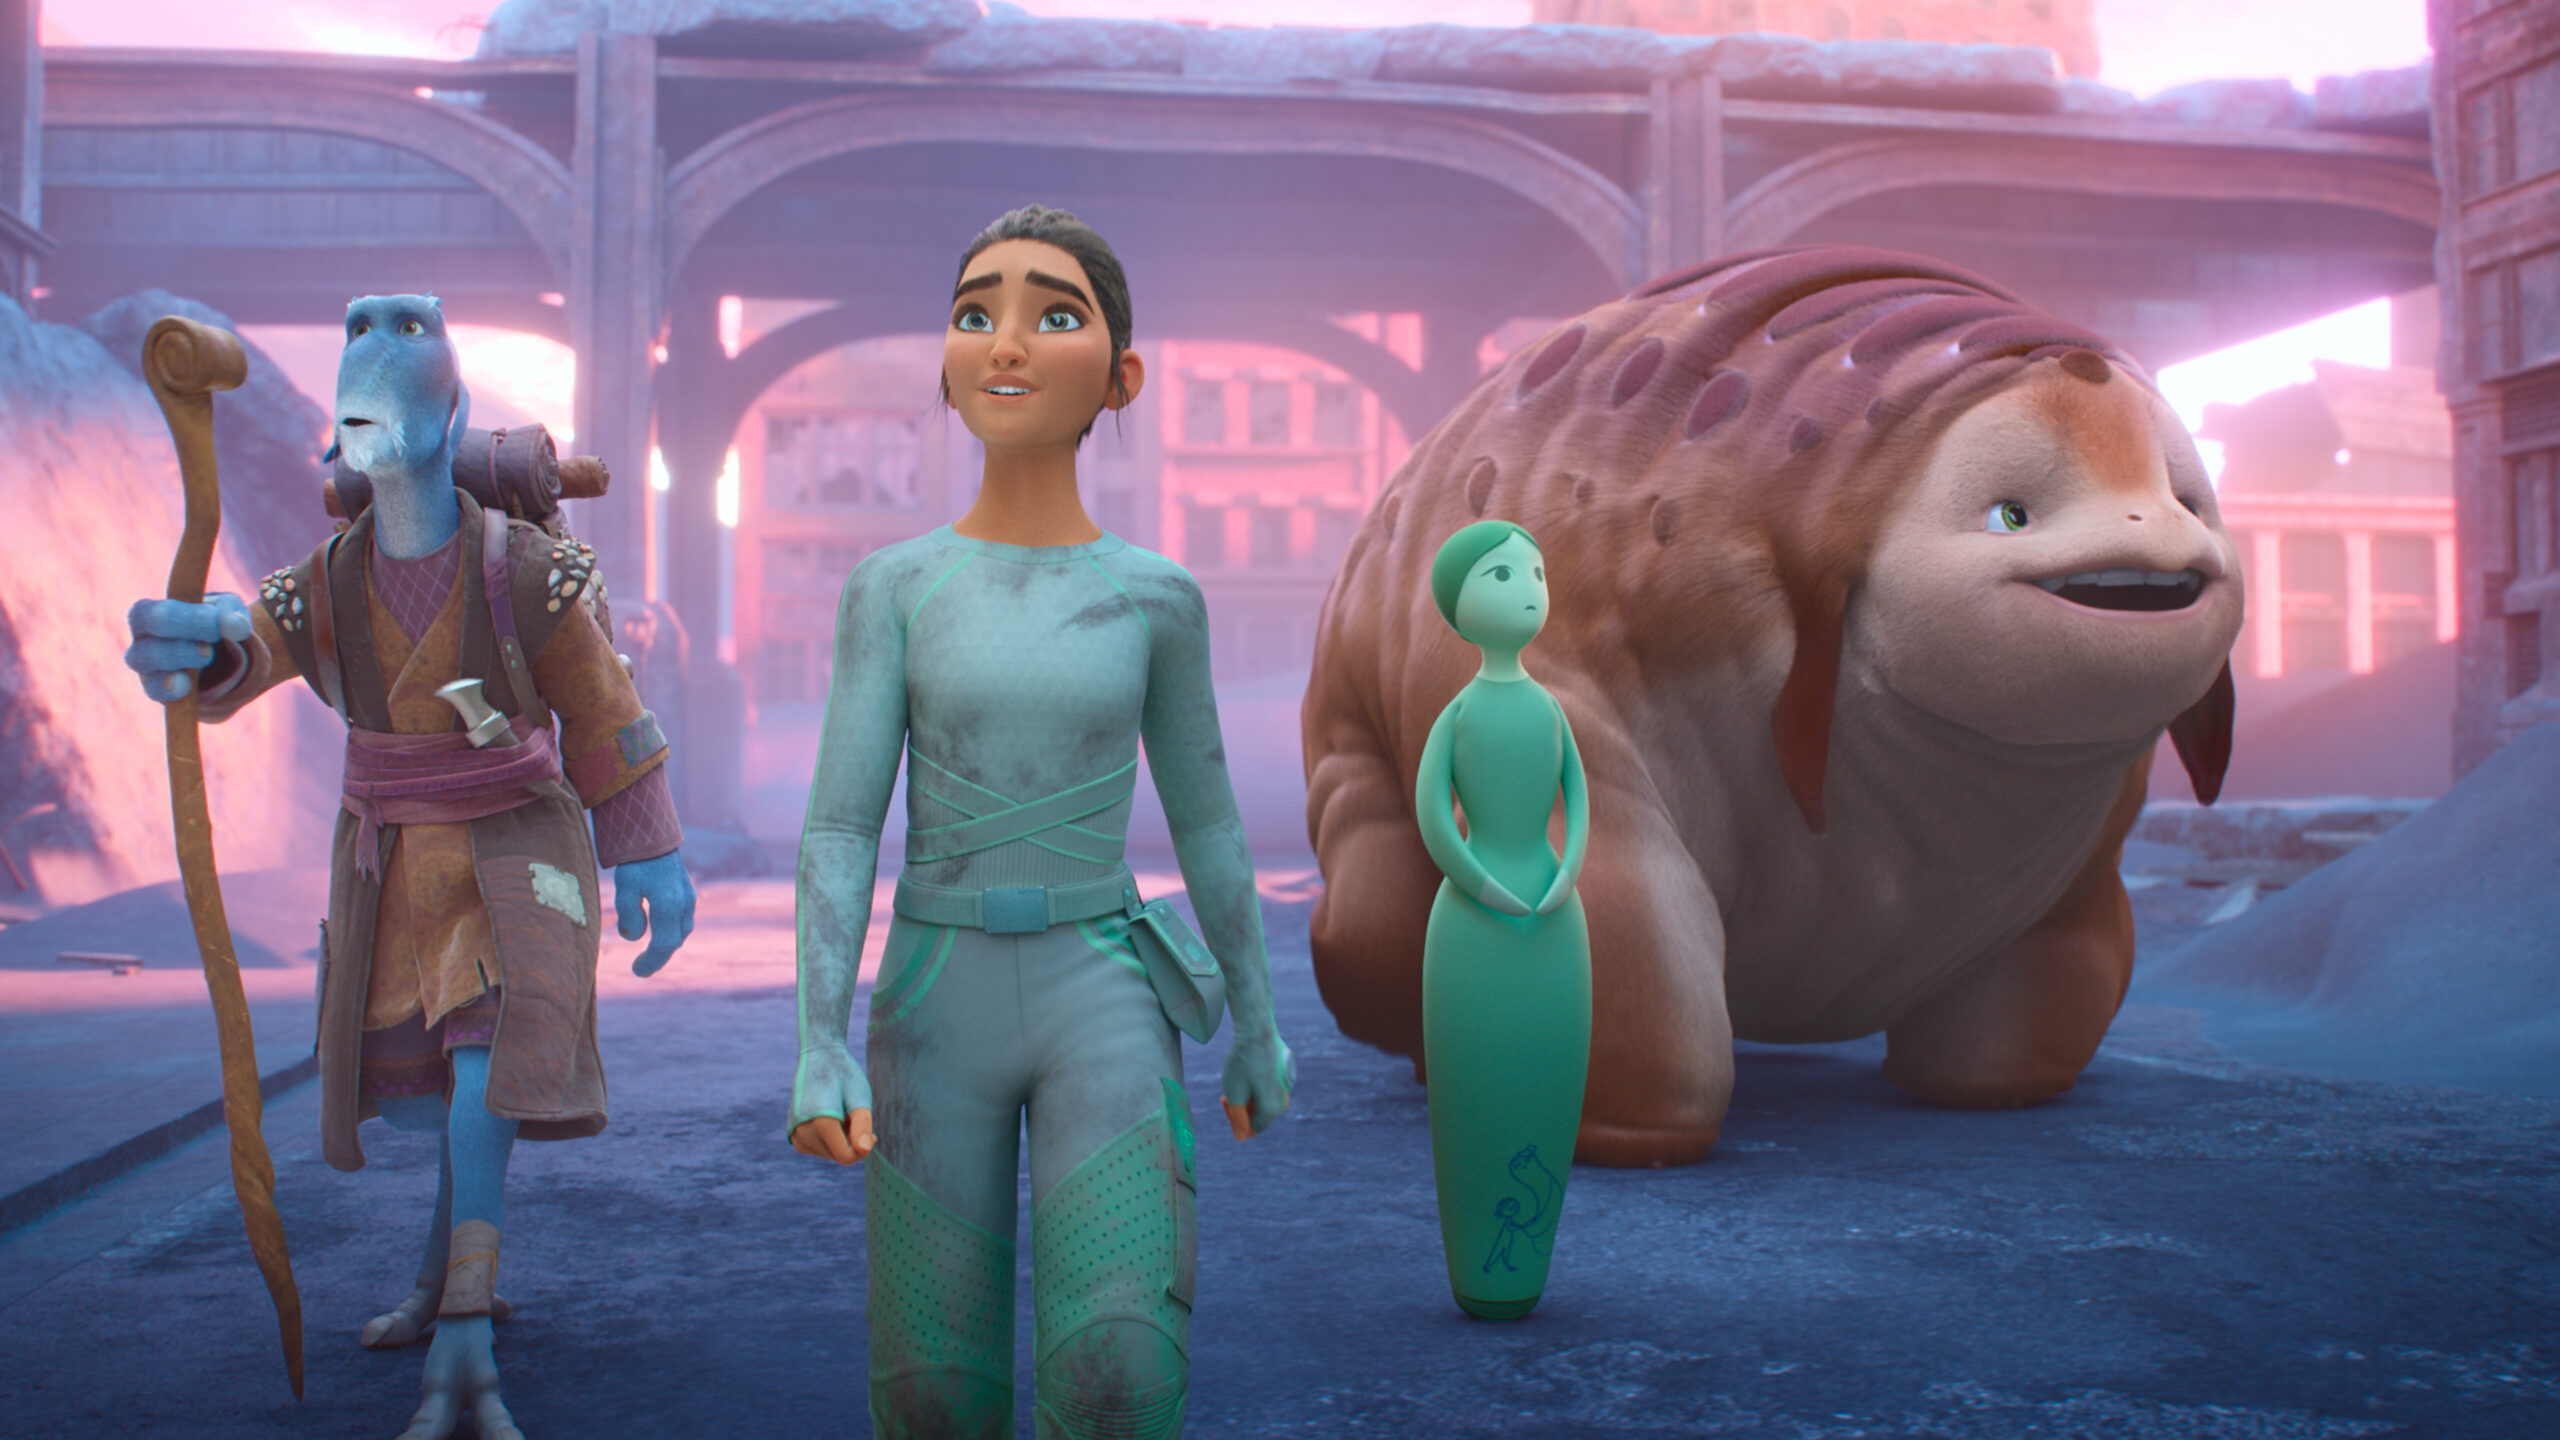 Epic Adventure Animated Series “WondLa” Set To Premiere On Apple TV+